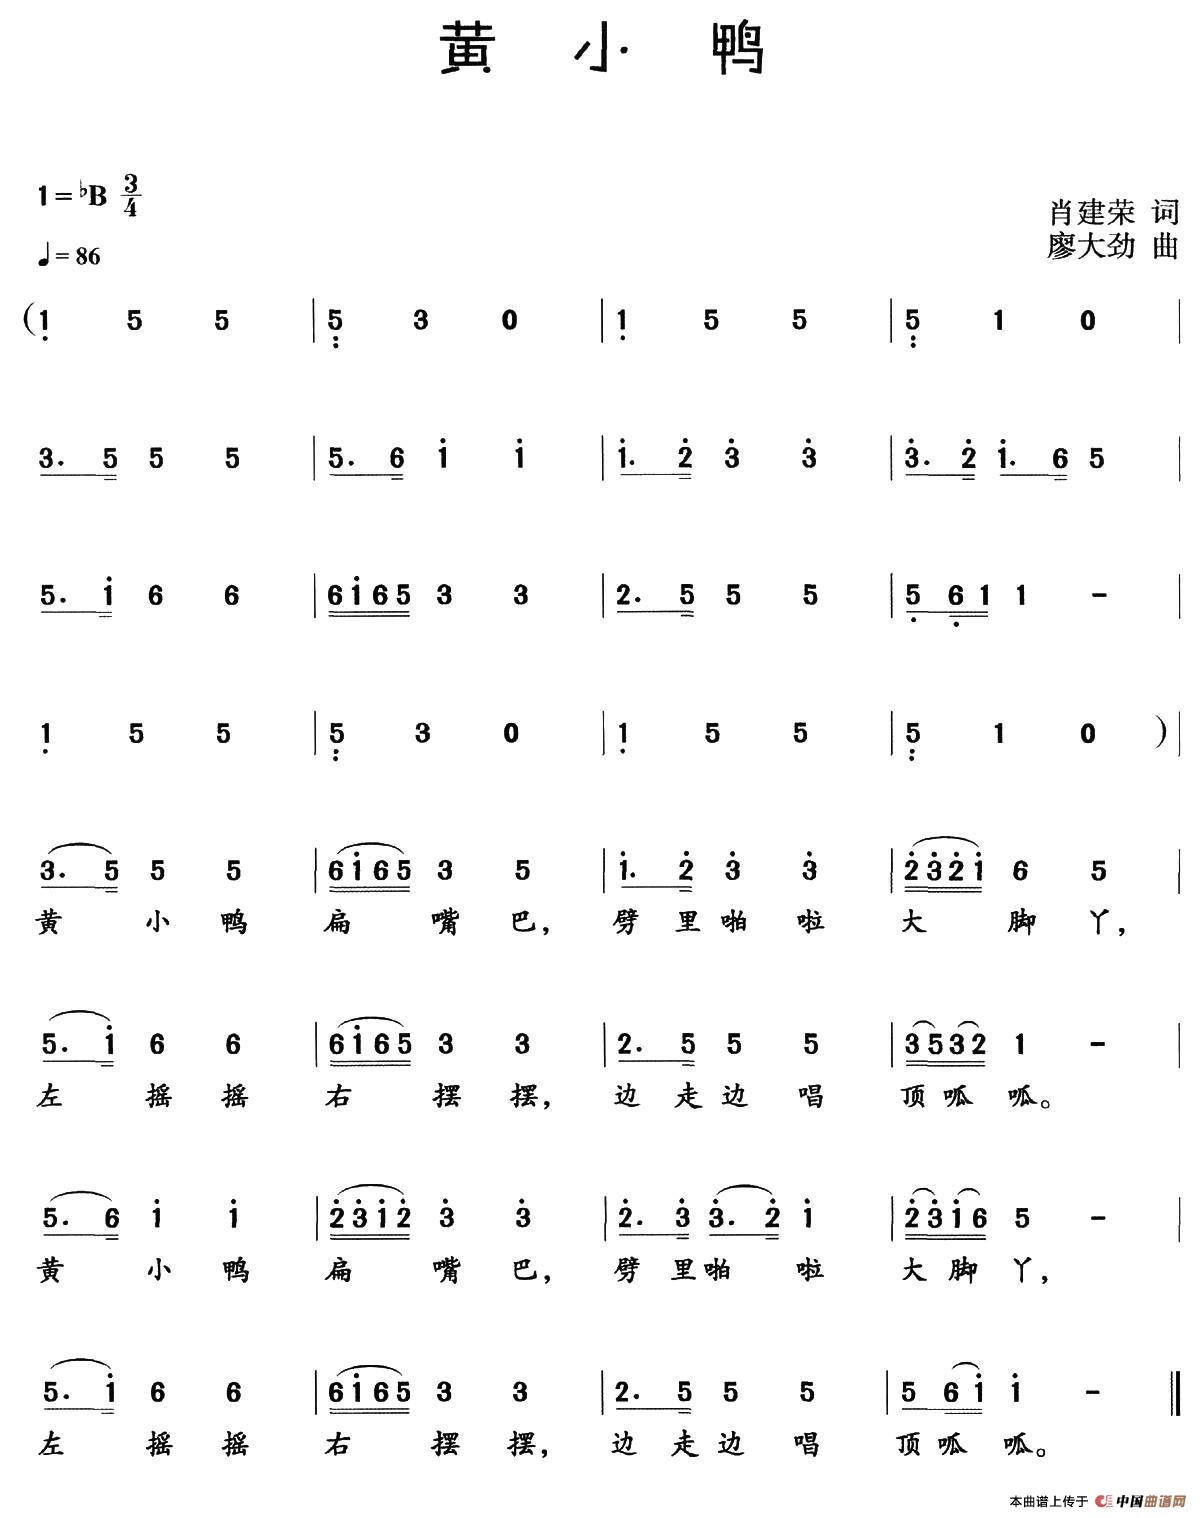 黄小鸭(1)_001 (57).jpg